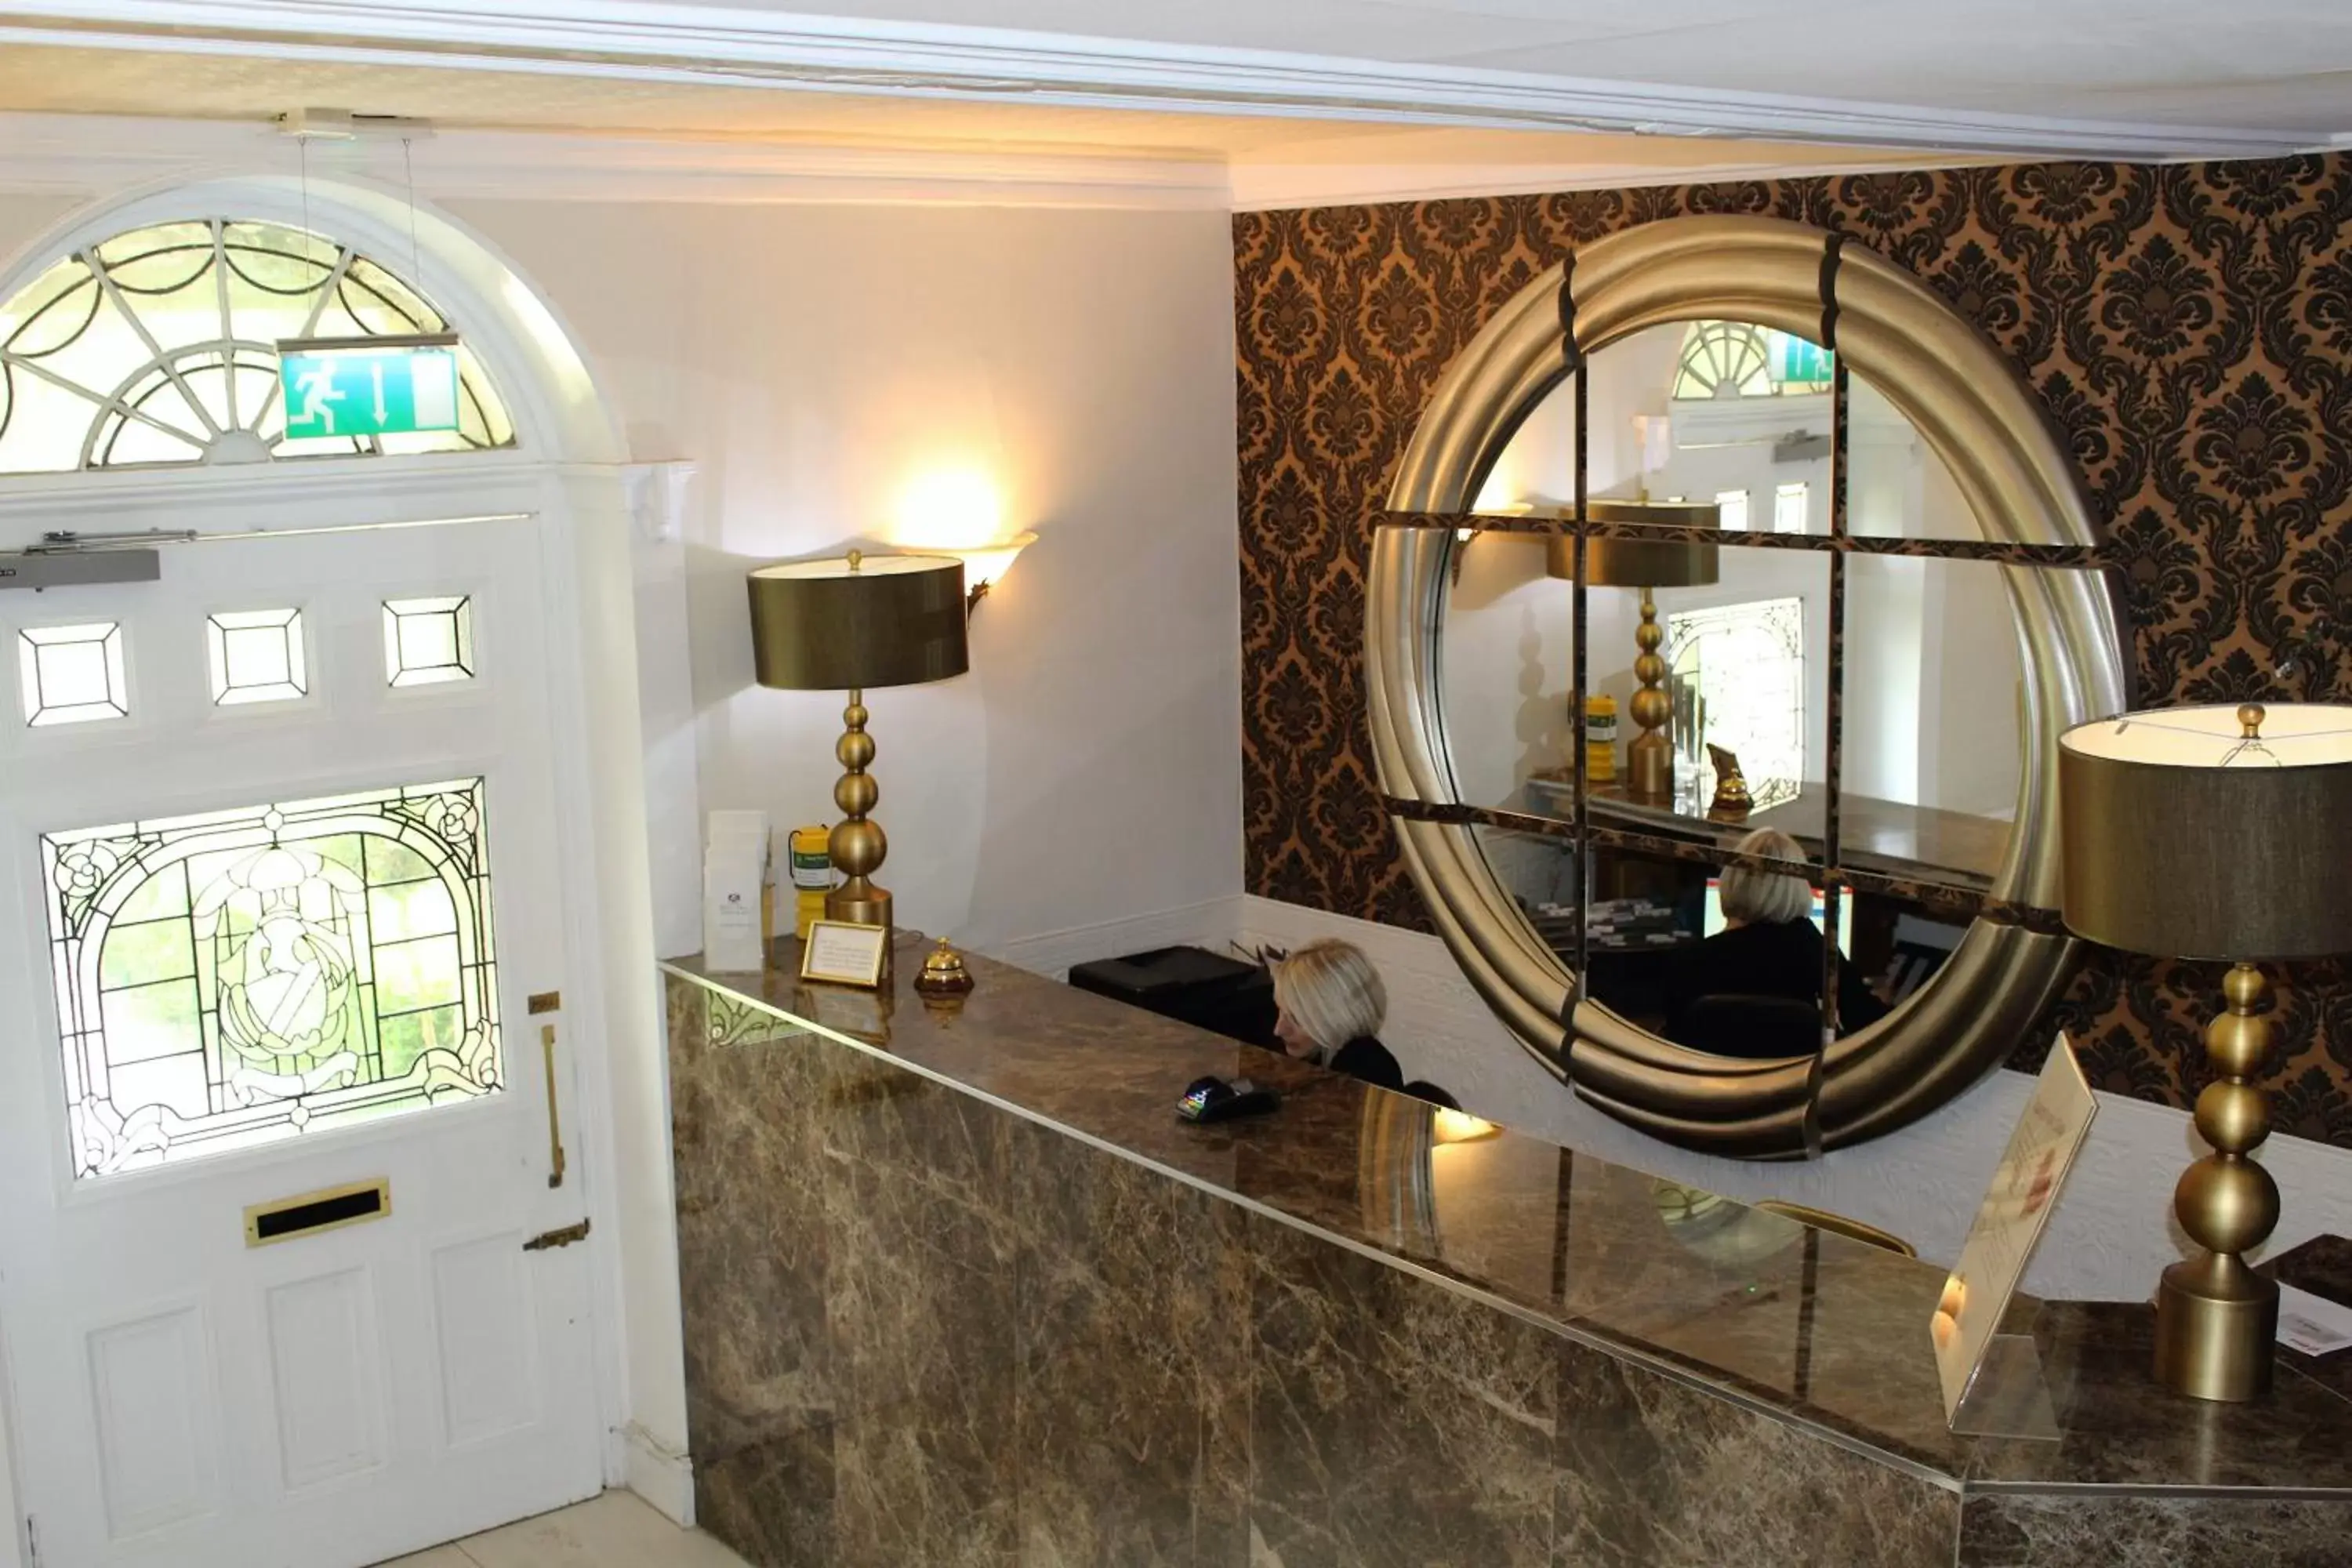 Lobby or reception, Bathroom in Risley Hall Hotel